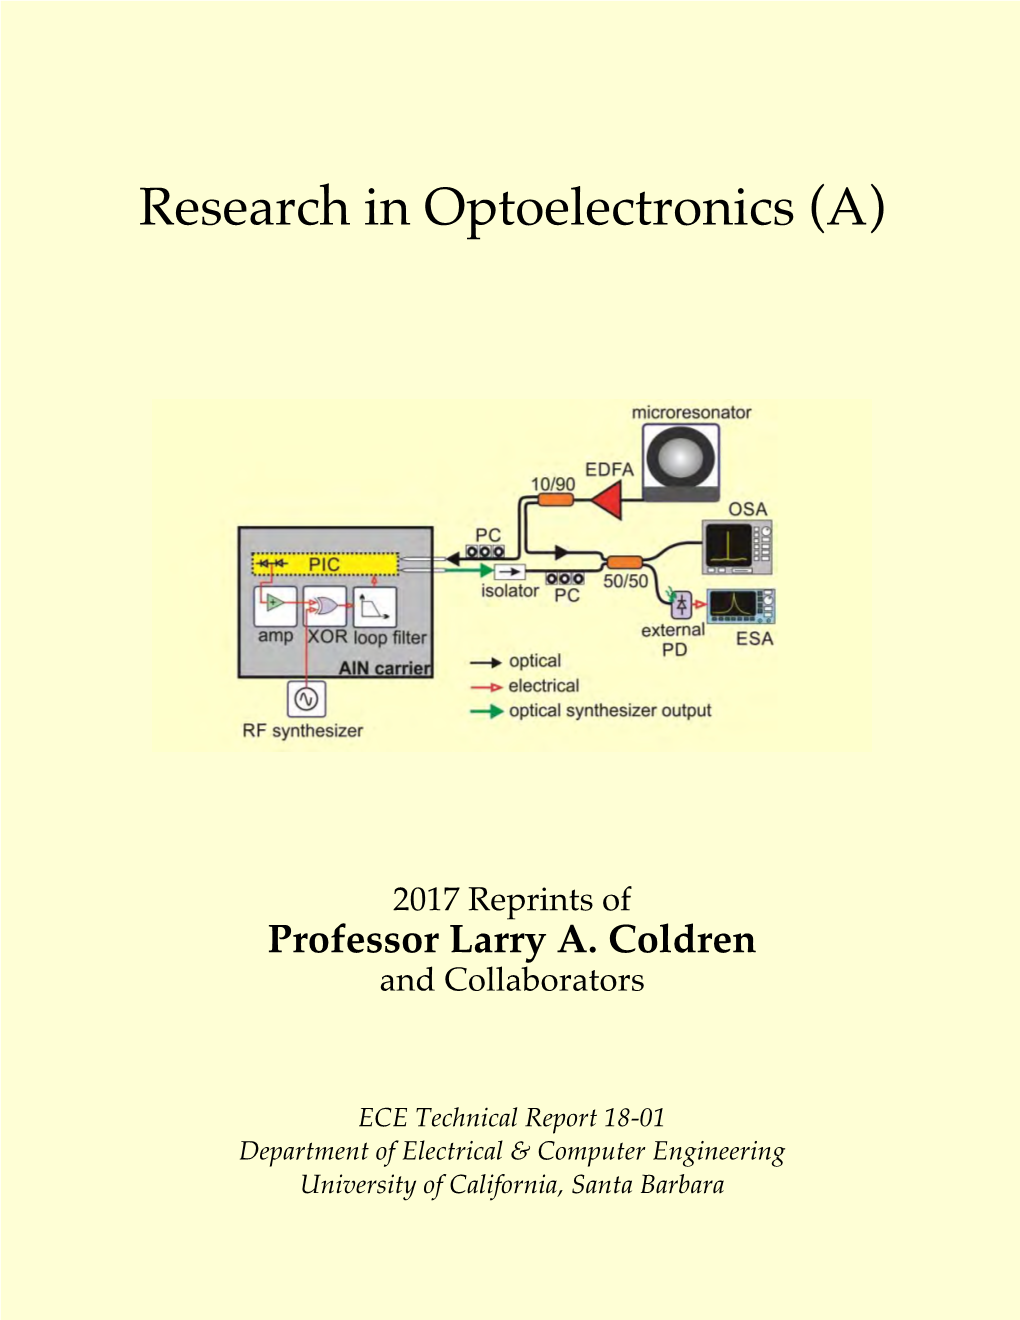 2017 Reprints of Professor Larry A